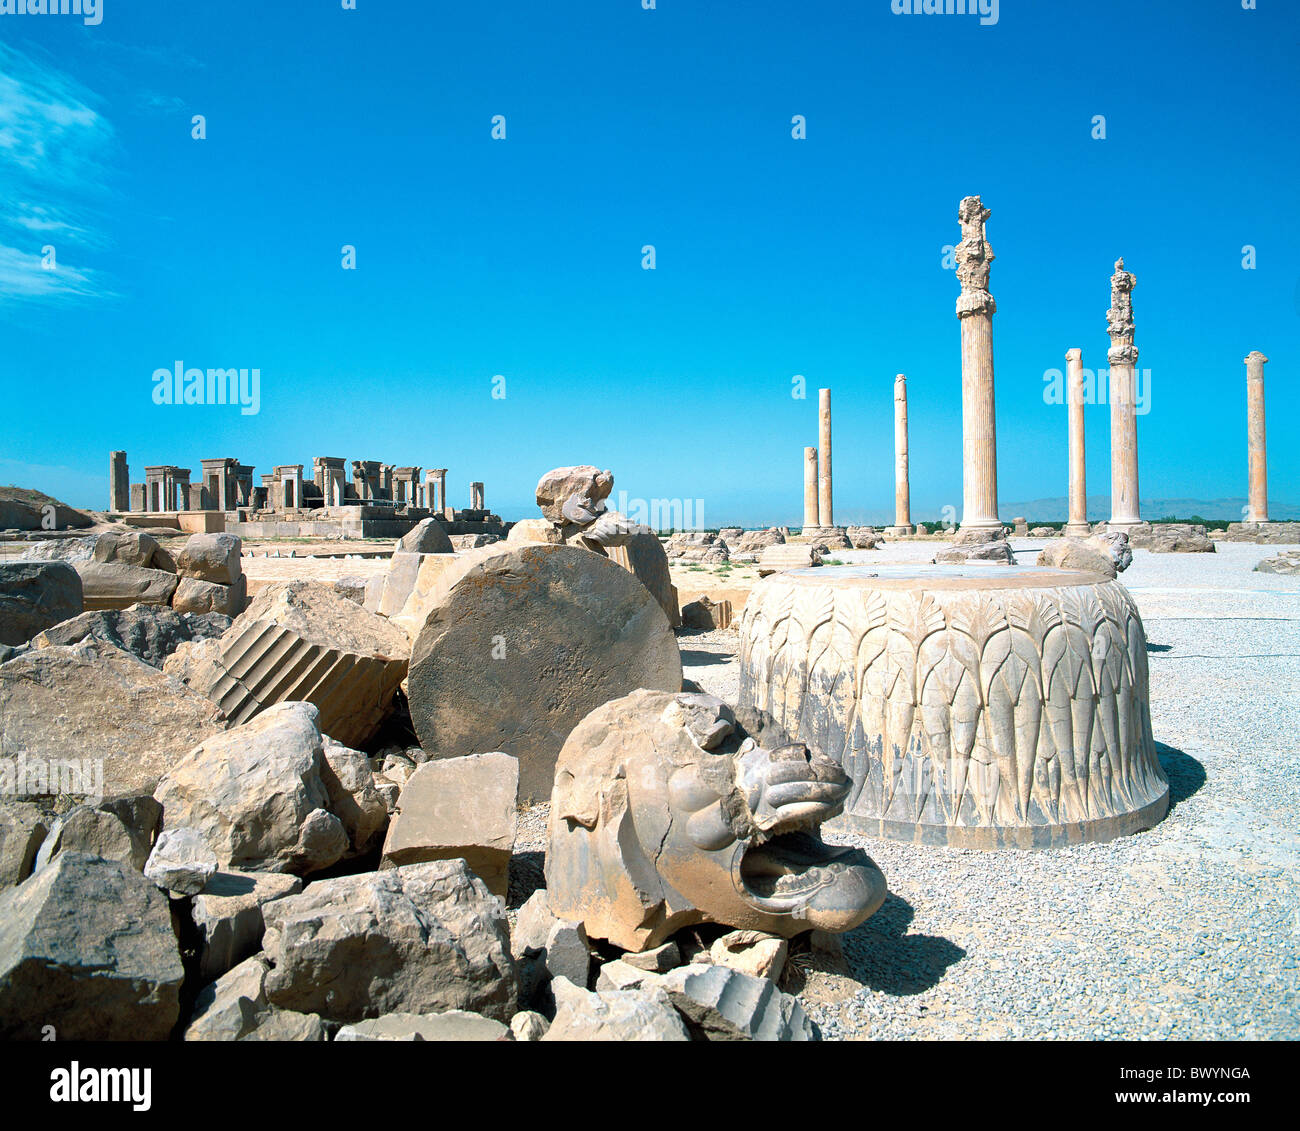 Apadana Iran Moyen-orient culture palace Persépolis ruines colonnes Takht e Jamshid monde antique l'antiquité Banque D'Images